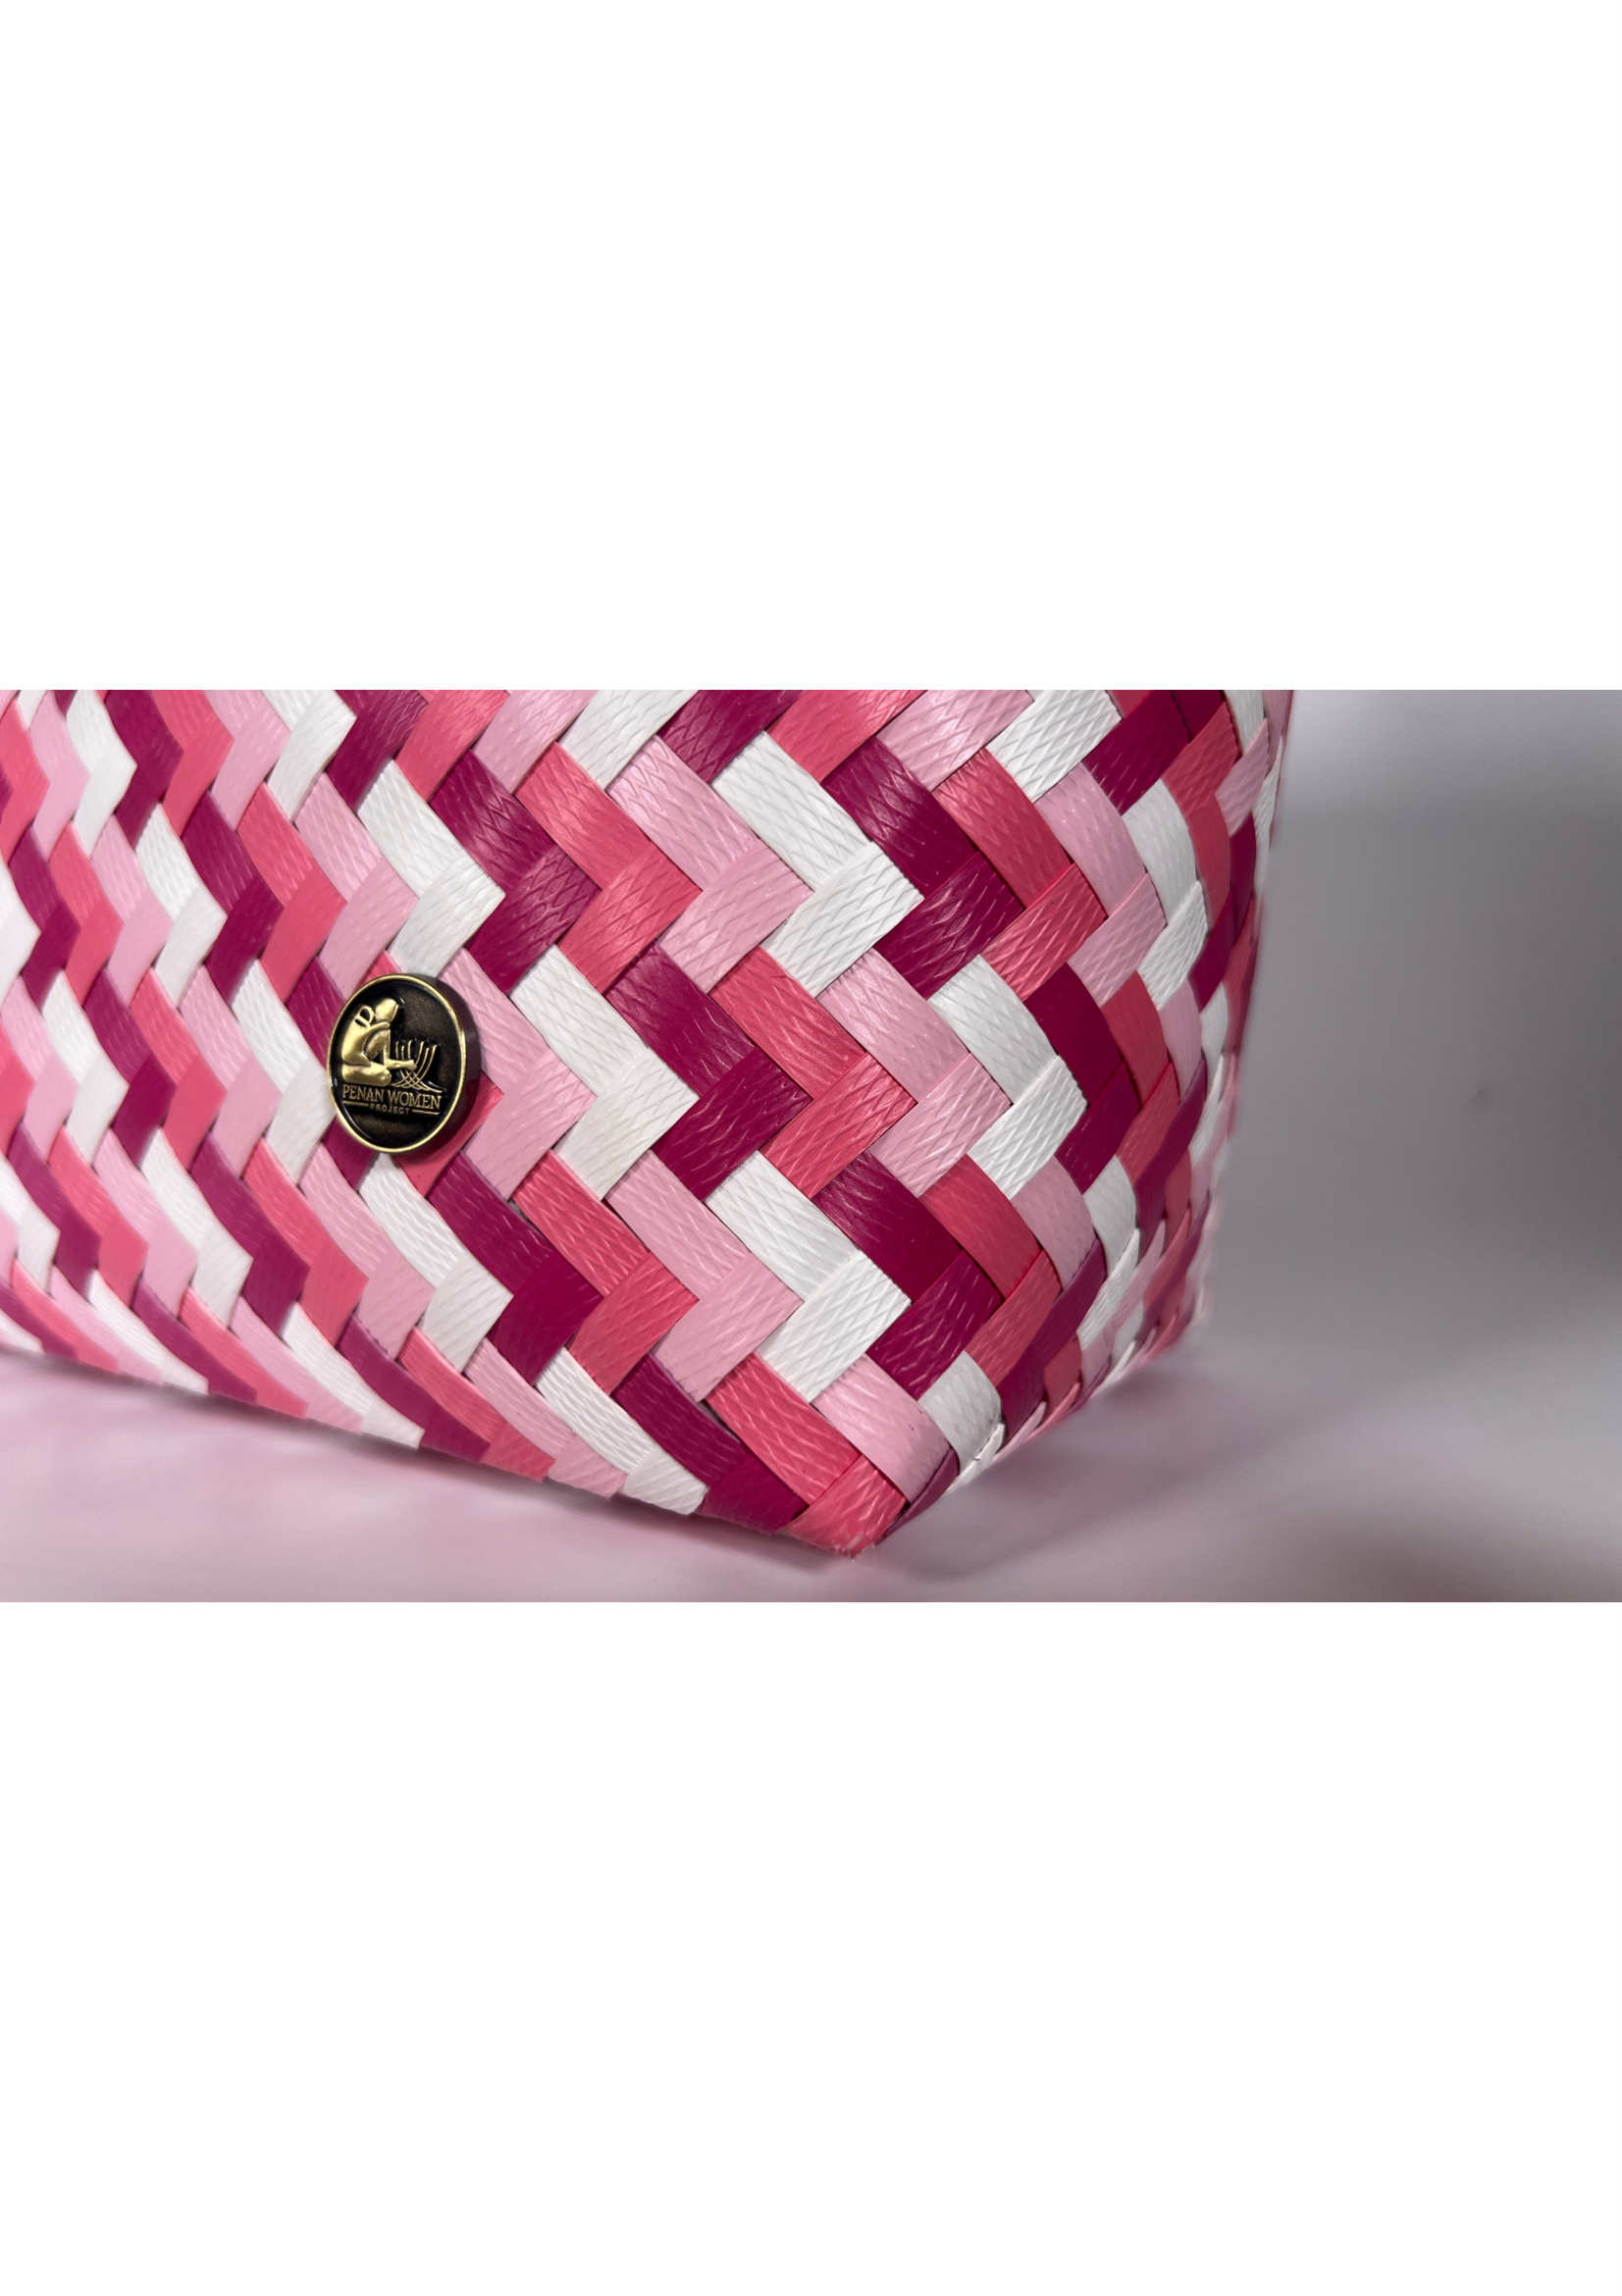 Pixel Pink Patterned Bag